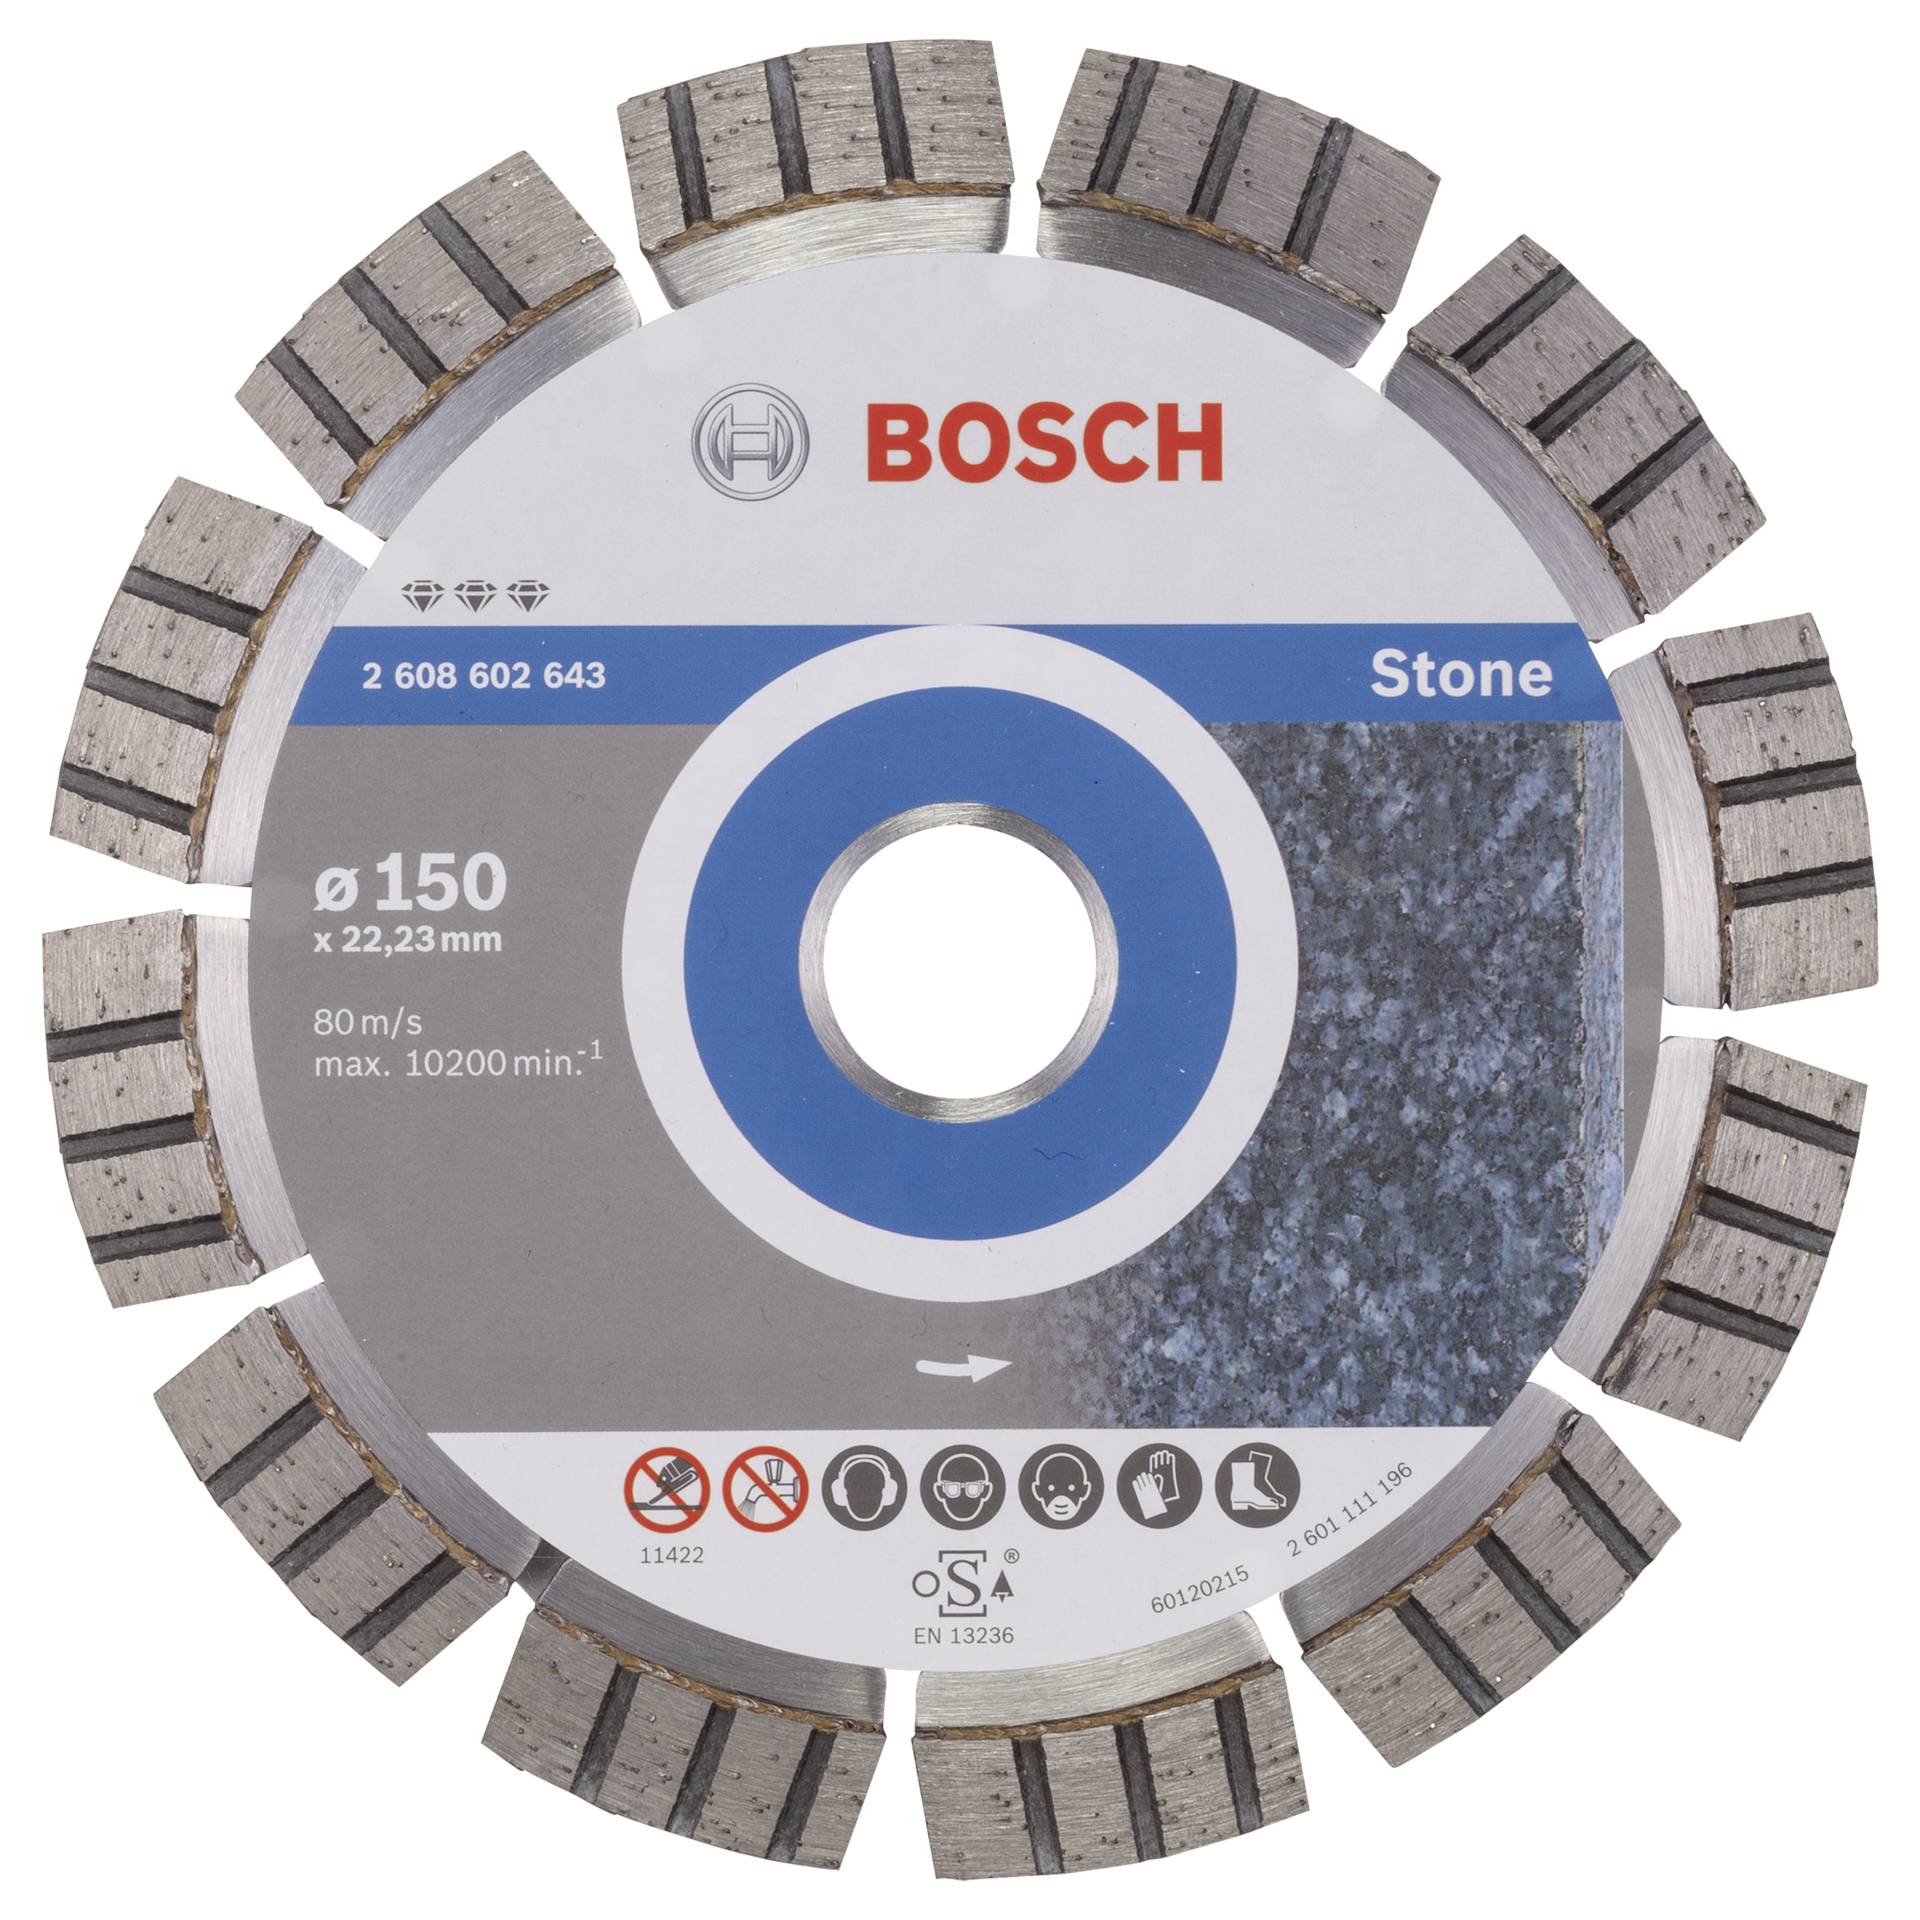 Bosch 2608602643